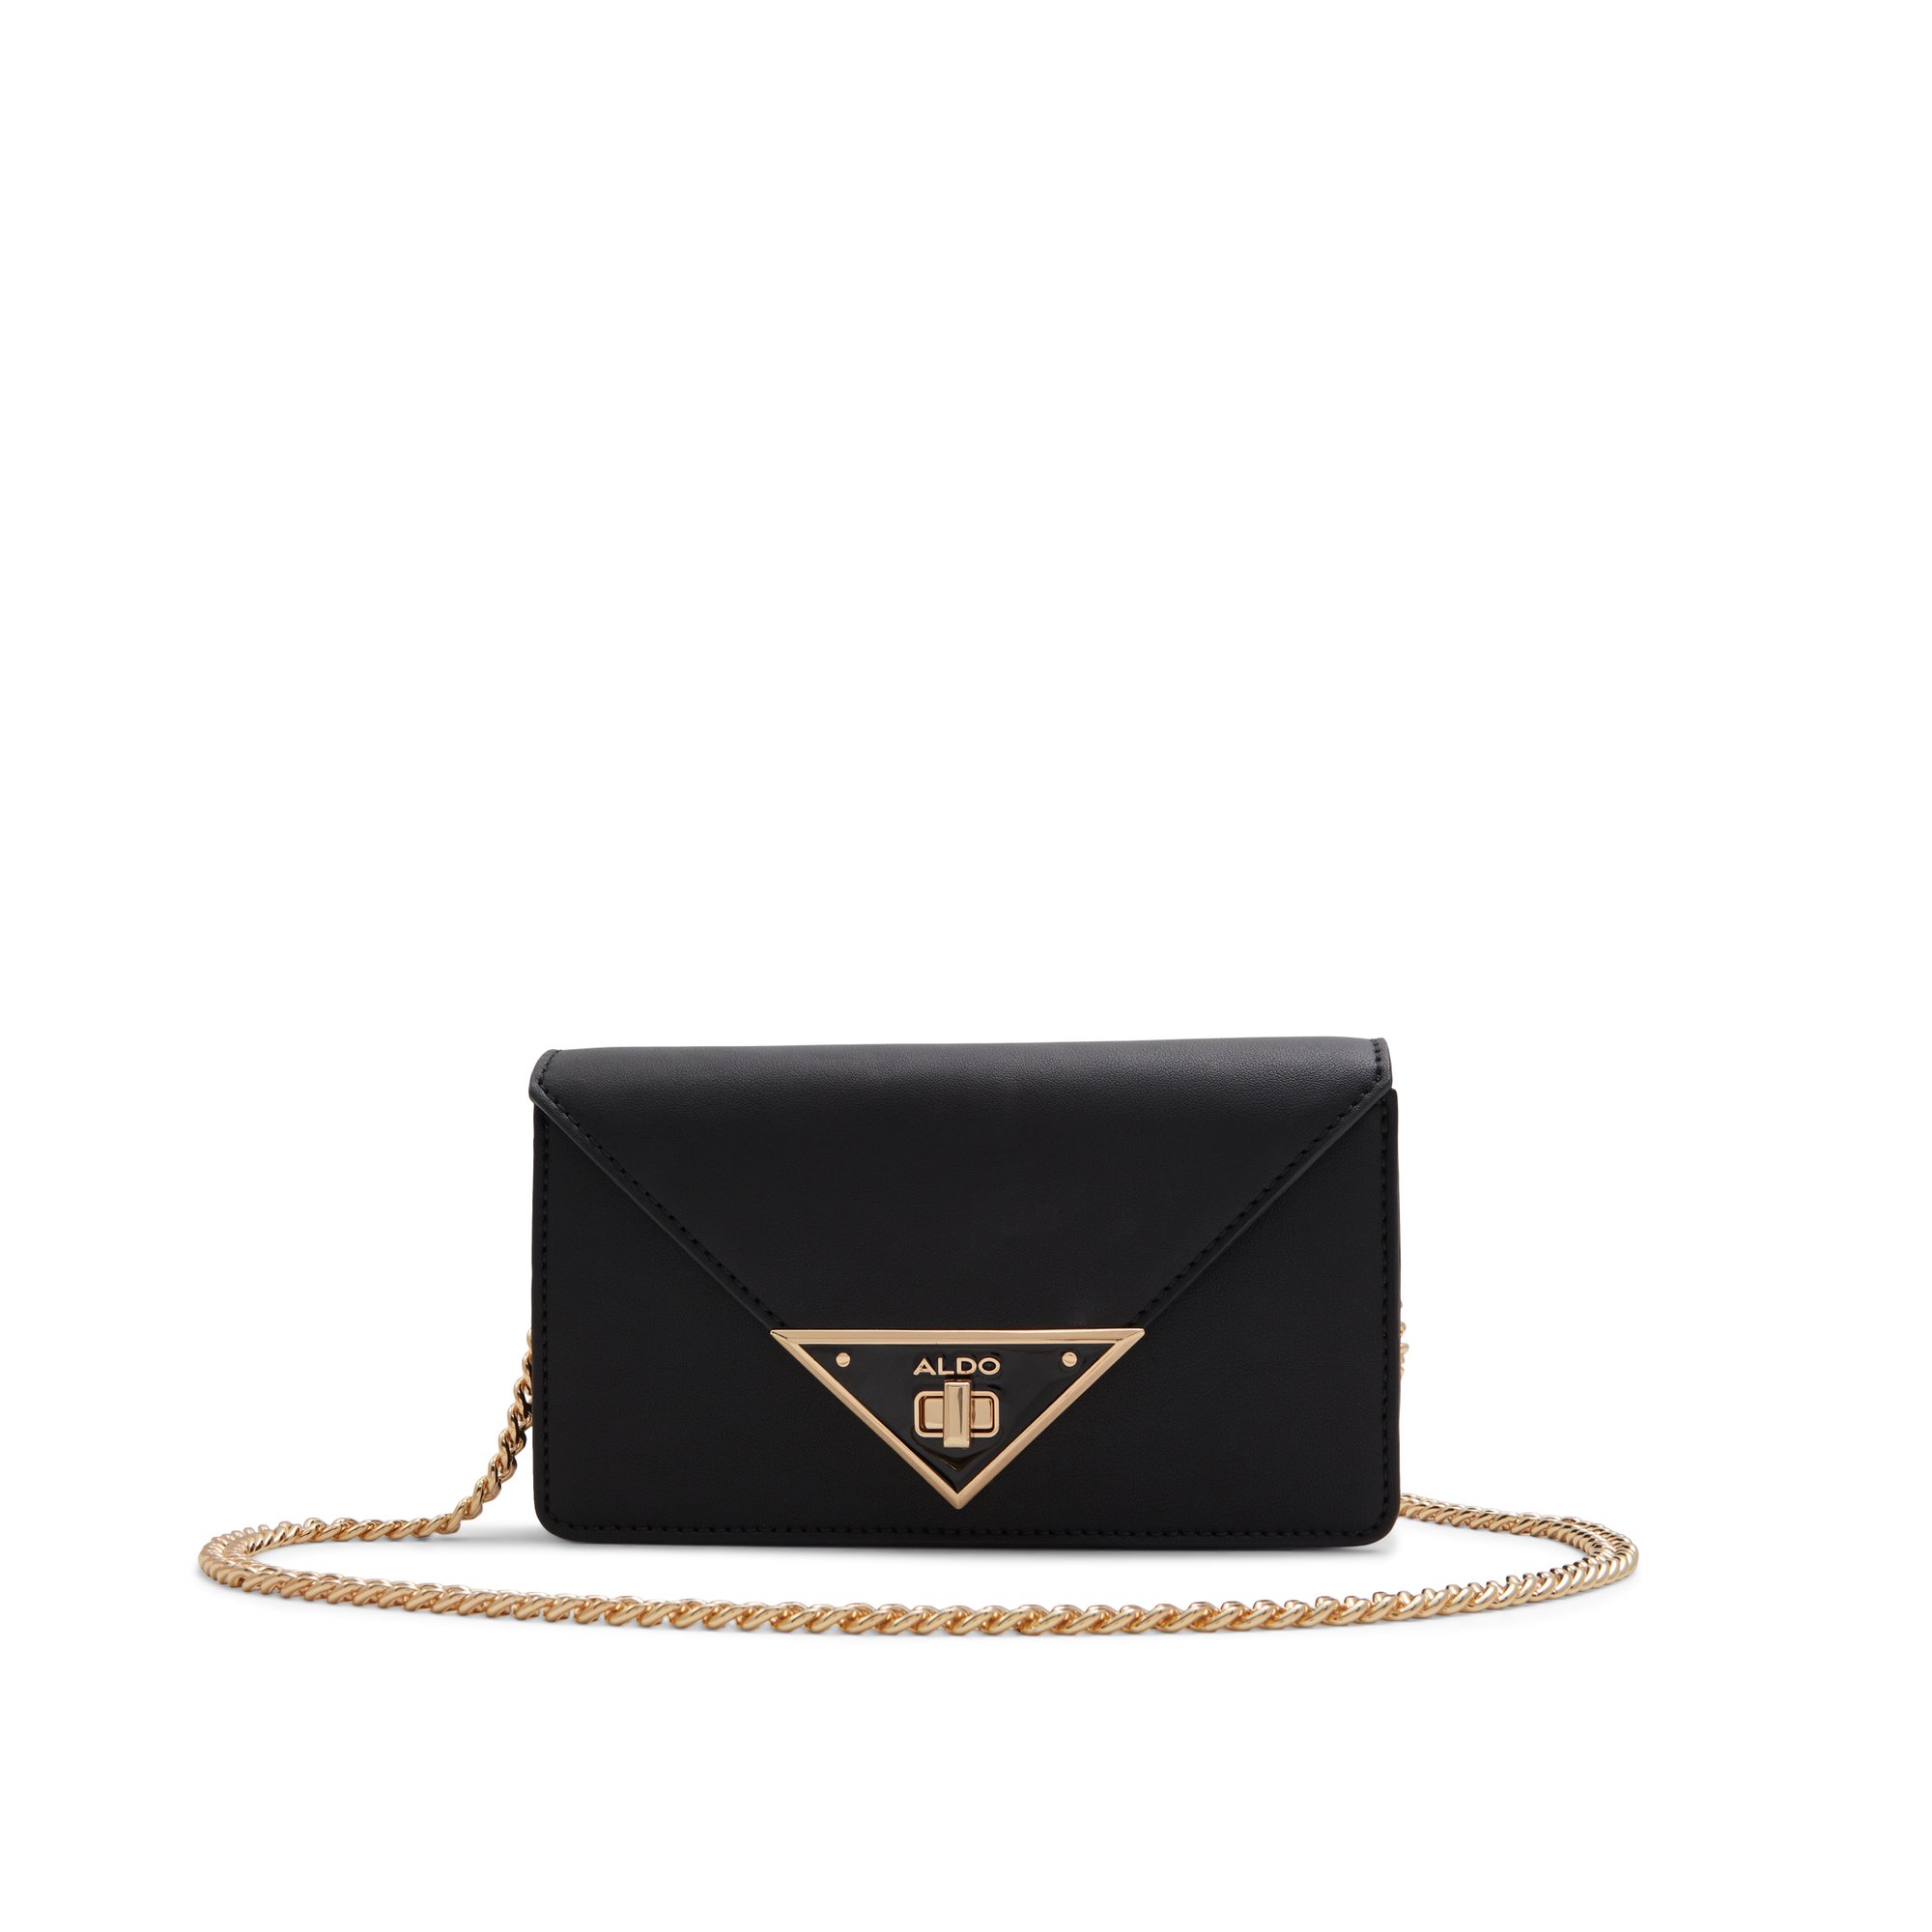 ALDO Brimorton - Women's Handbags Crossbody - Black